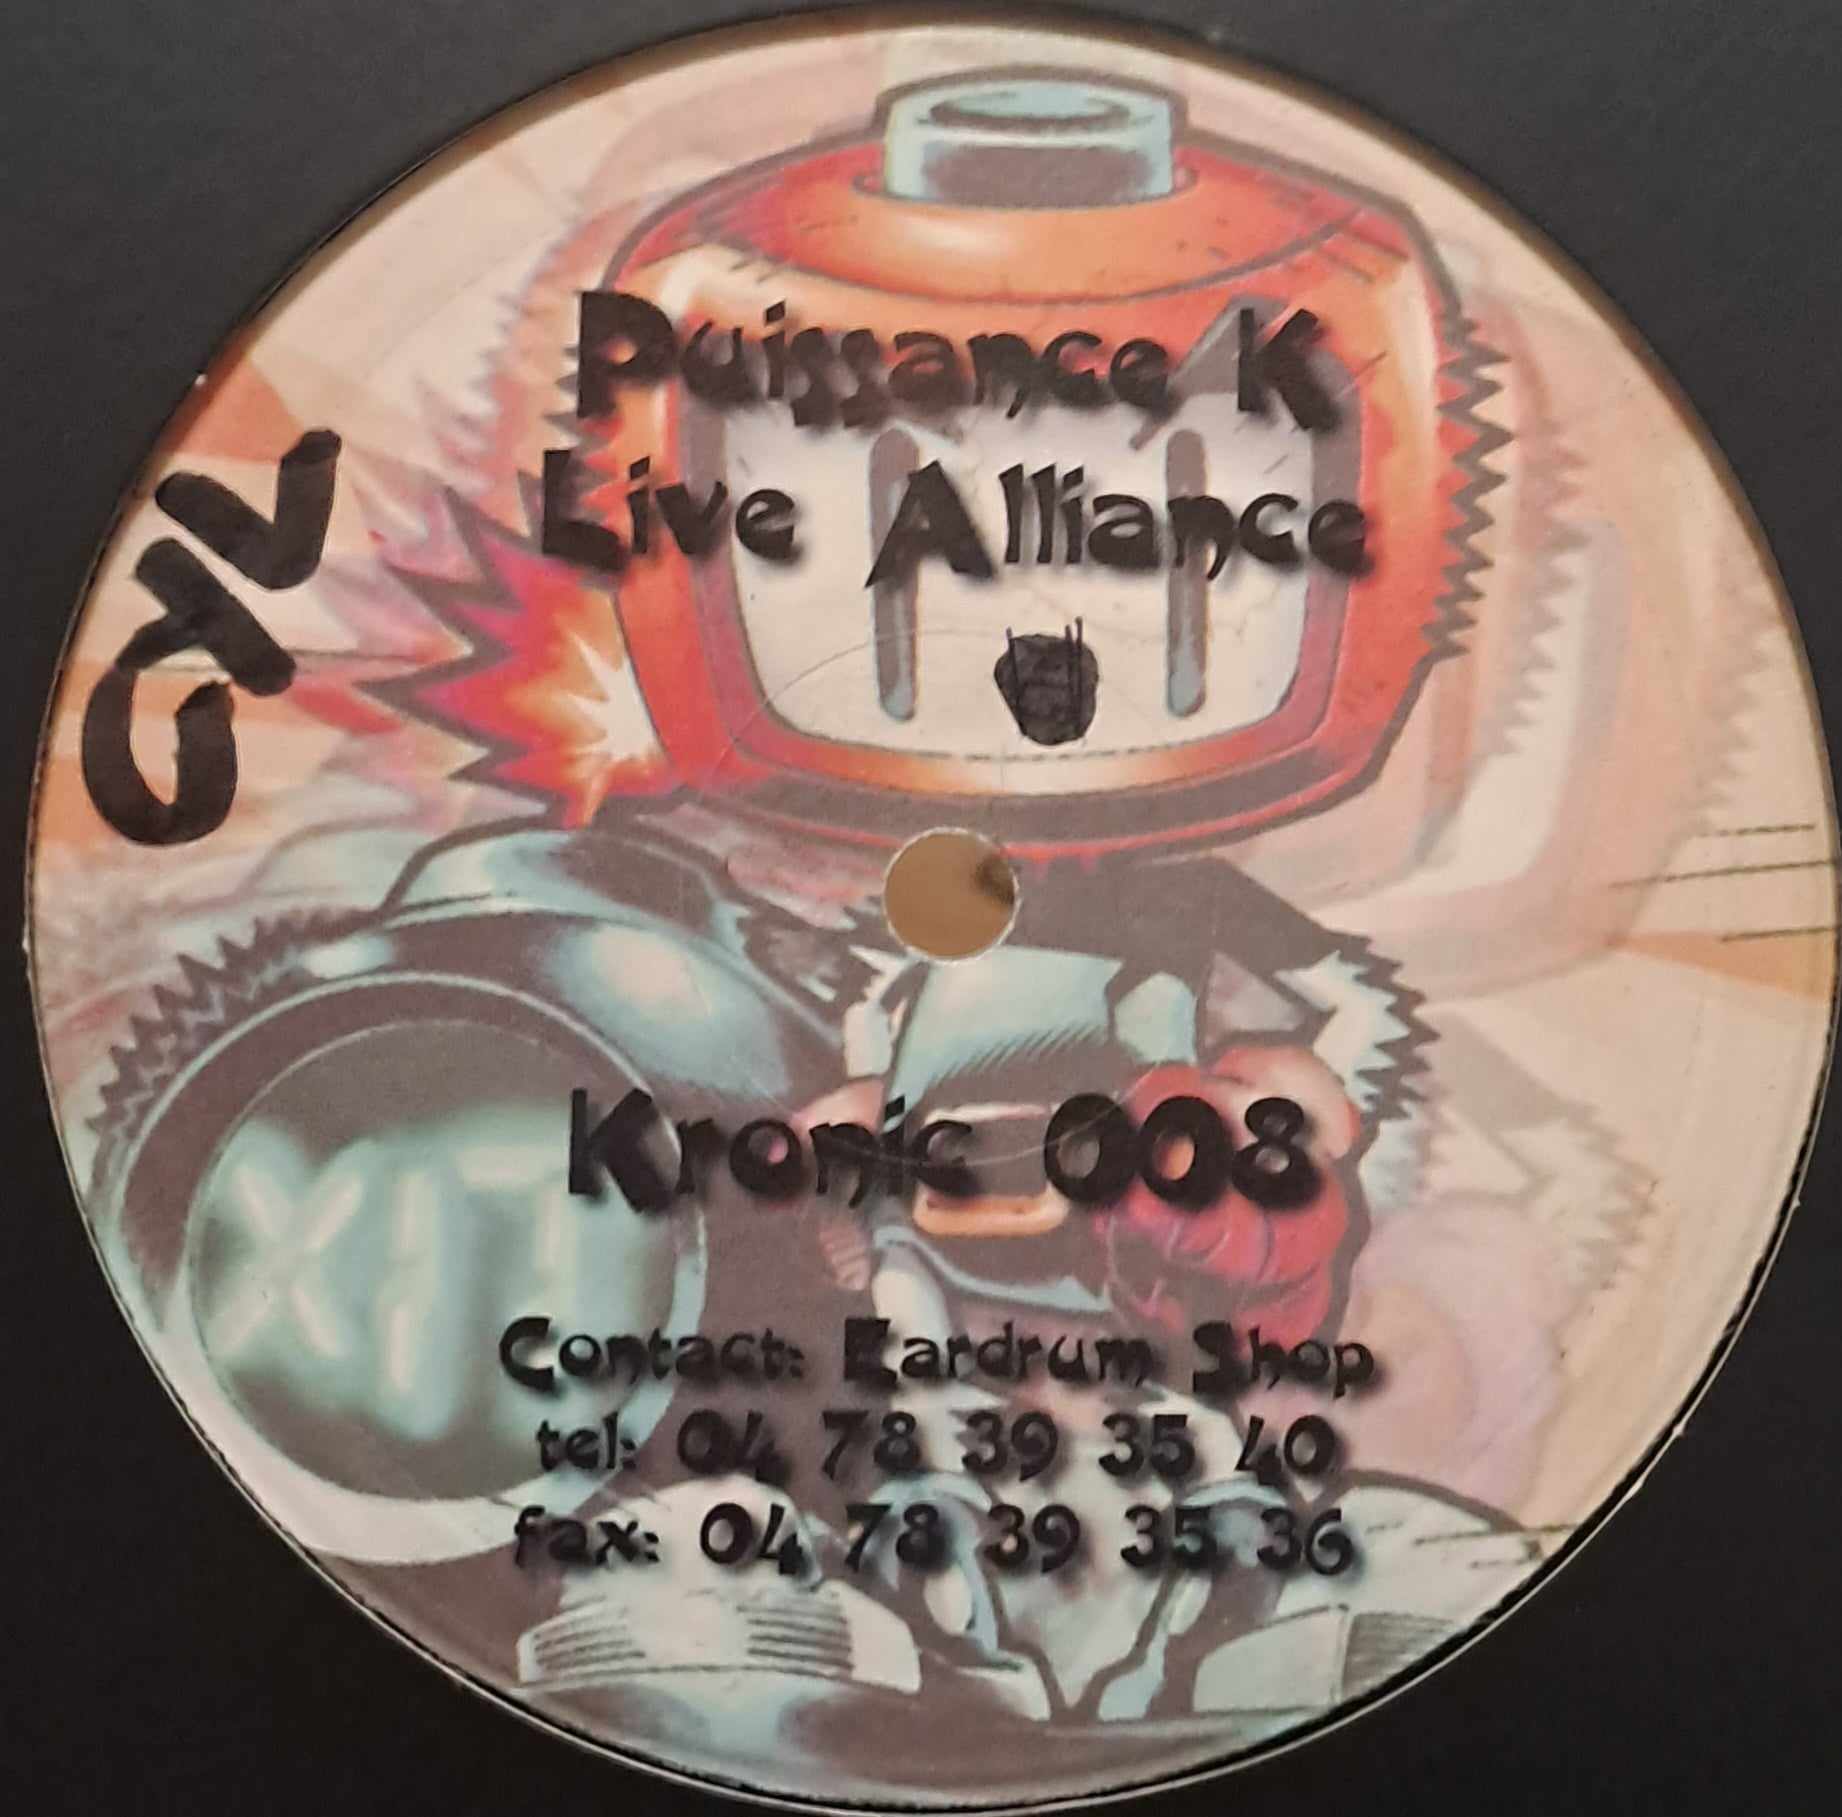 Kronic 008 - vinyle freetekno